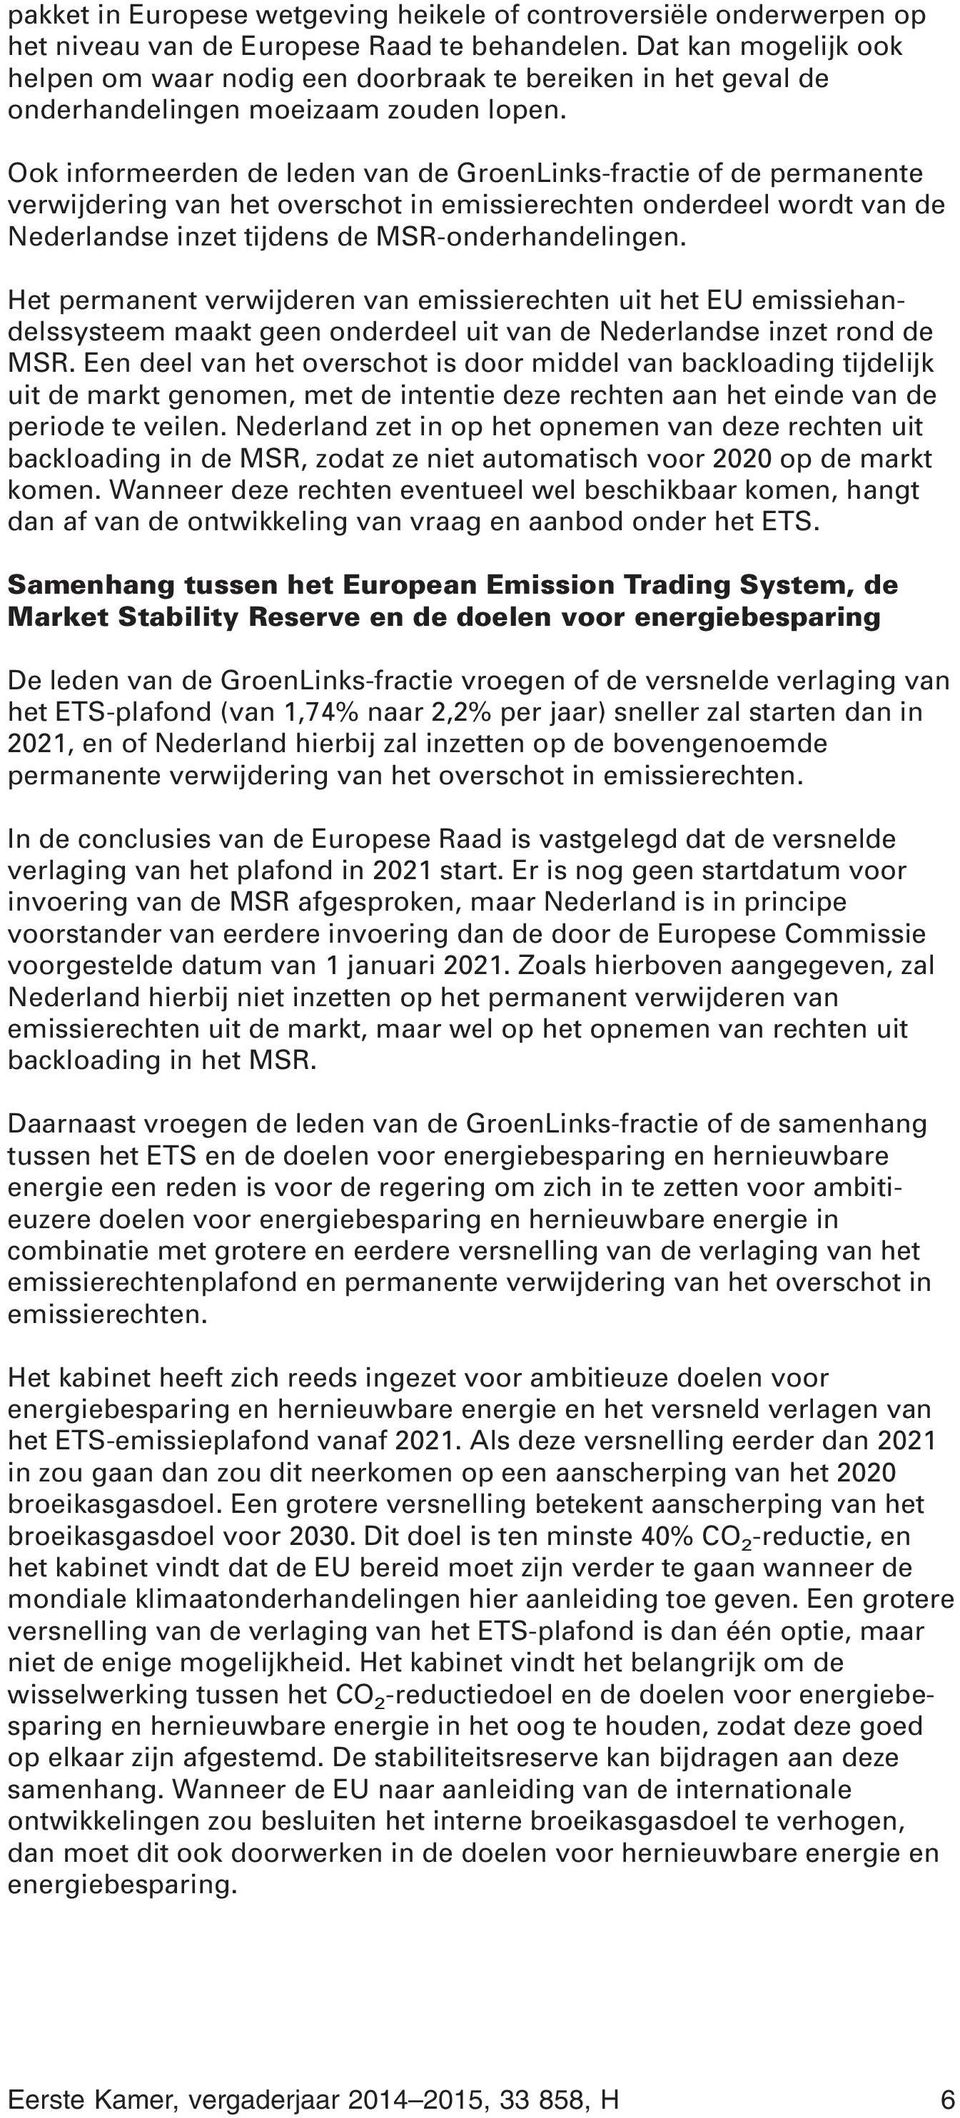 Ook informeerden de leden van de GroenLinks-fractie of de permanente verwijdering van het overschot in emissierechten onderdeel wordt van de Nederlandse inzet tijdens de MSR-onderhandelingen.